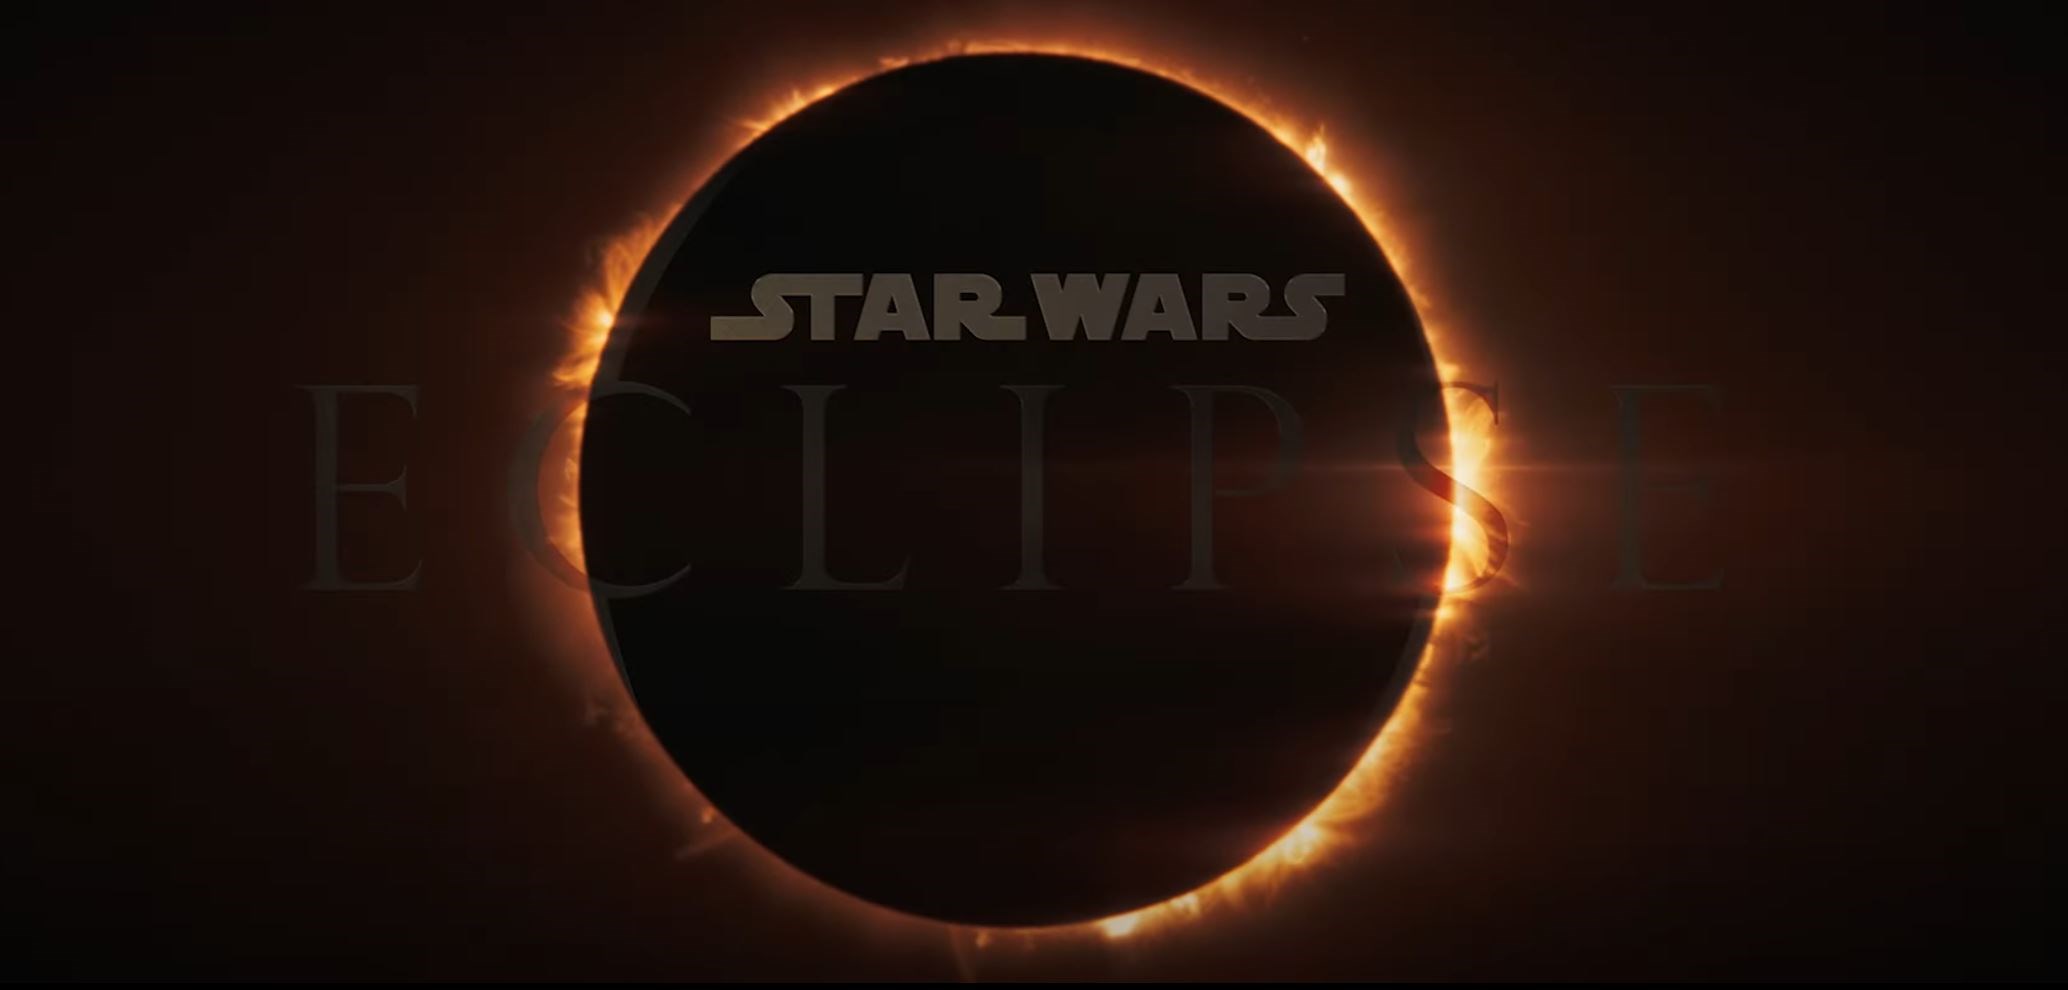 Star Wars Eclipse için çalışmalar devam ediyor